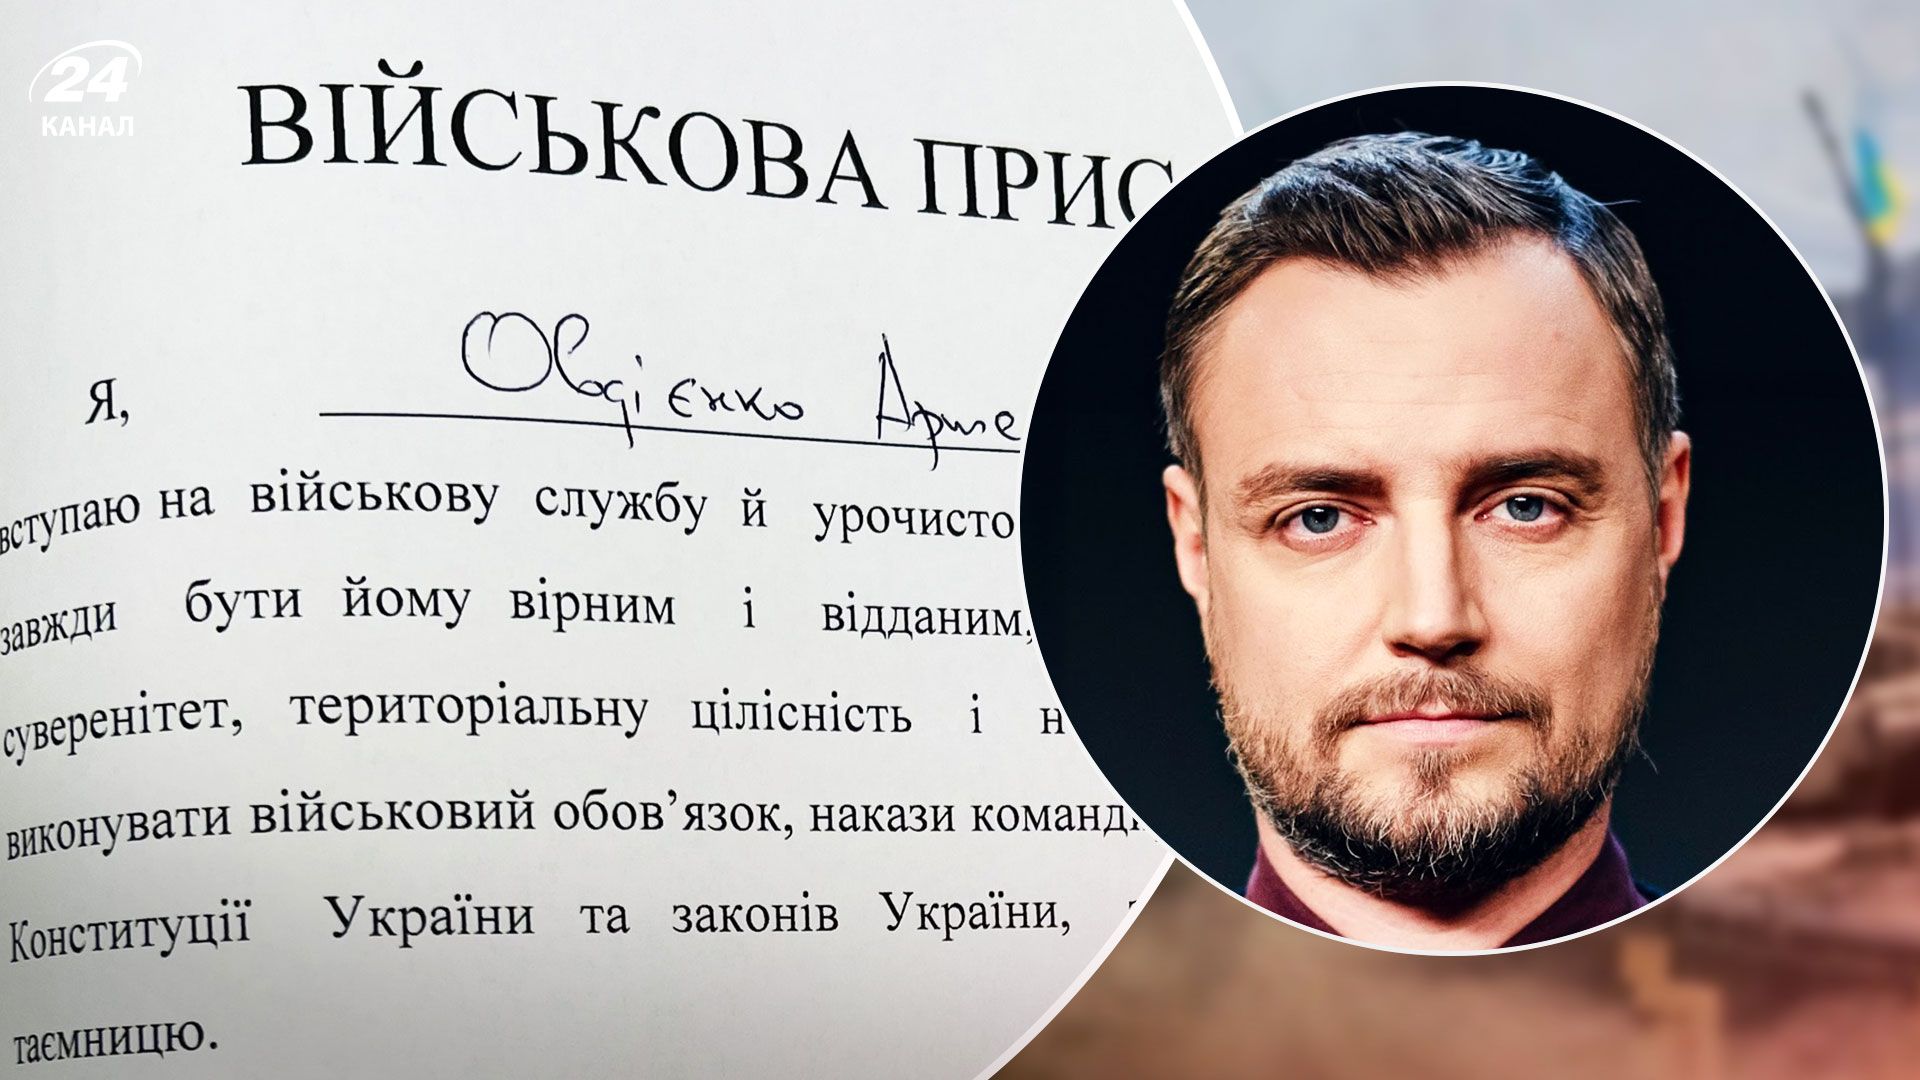 "Почуваюся гордим": ведучий 24 Каналу Артем Овдієнко склав присягу на вірність Україні - 24 Канал